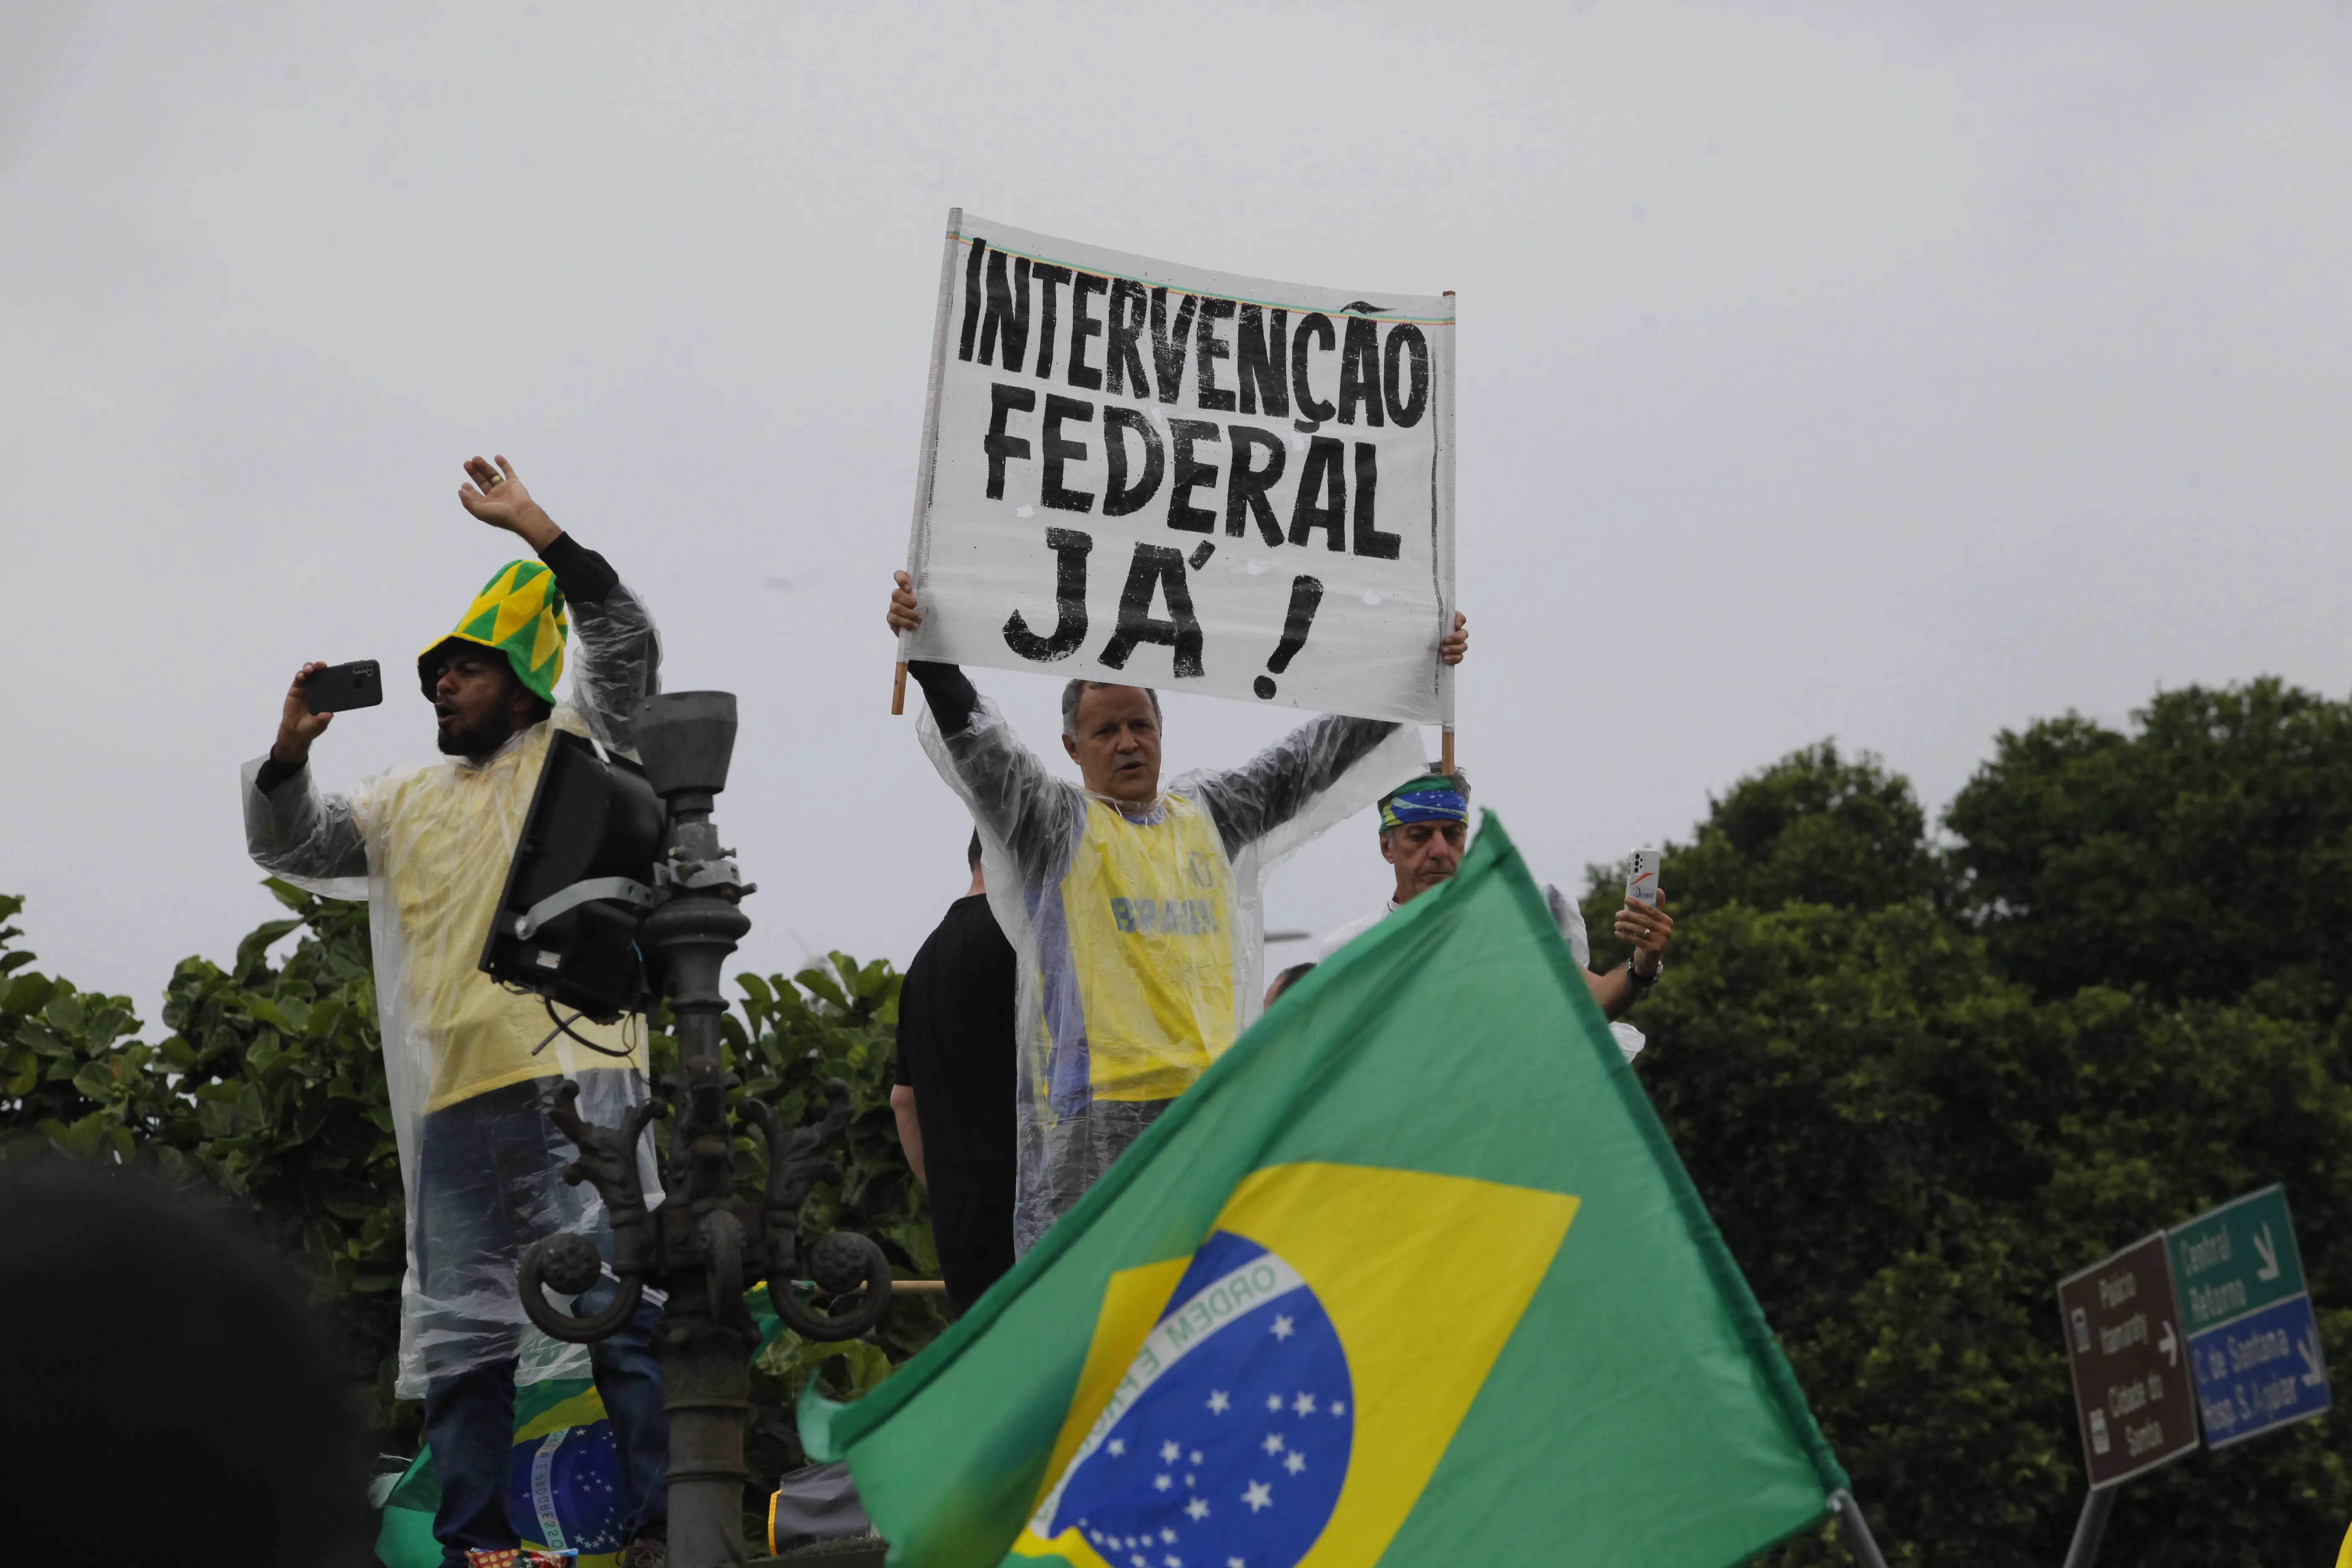 Apoiadores de Bolsonaro pedem por intervenção federal, o que não se aplicaria neste contexto de insatisfação com o resultado das eleições